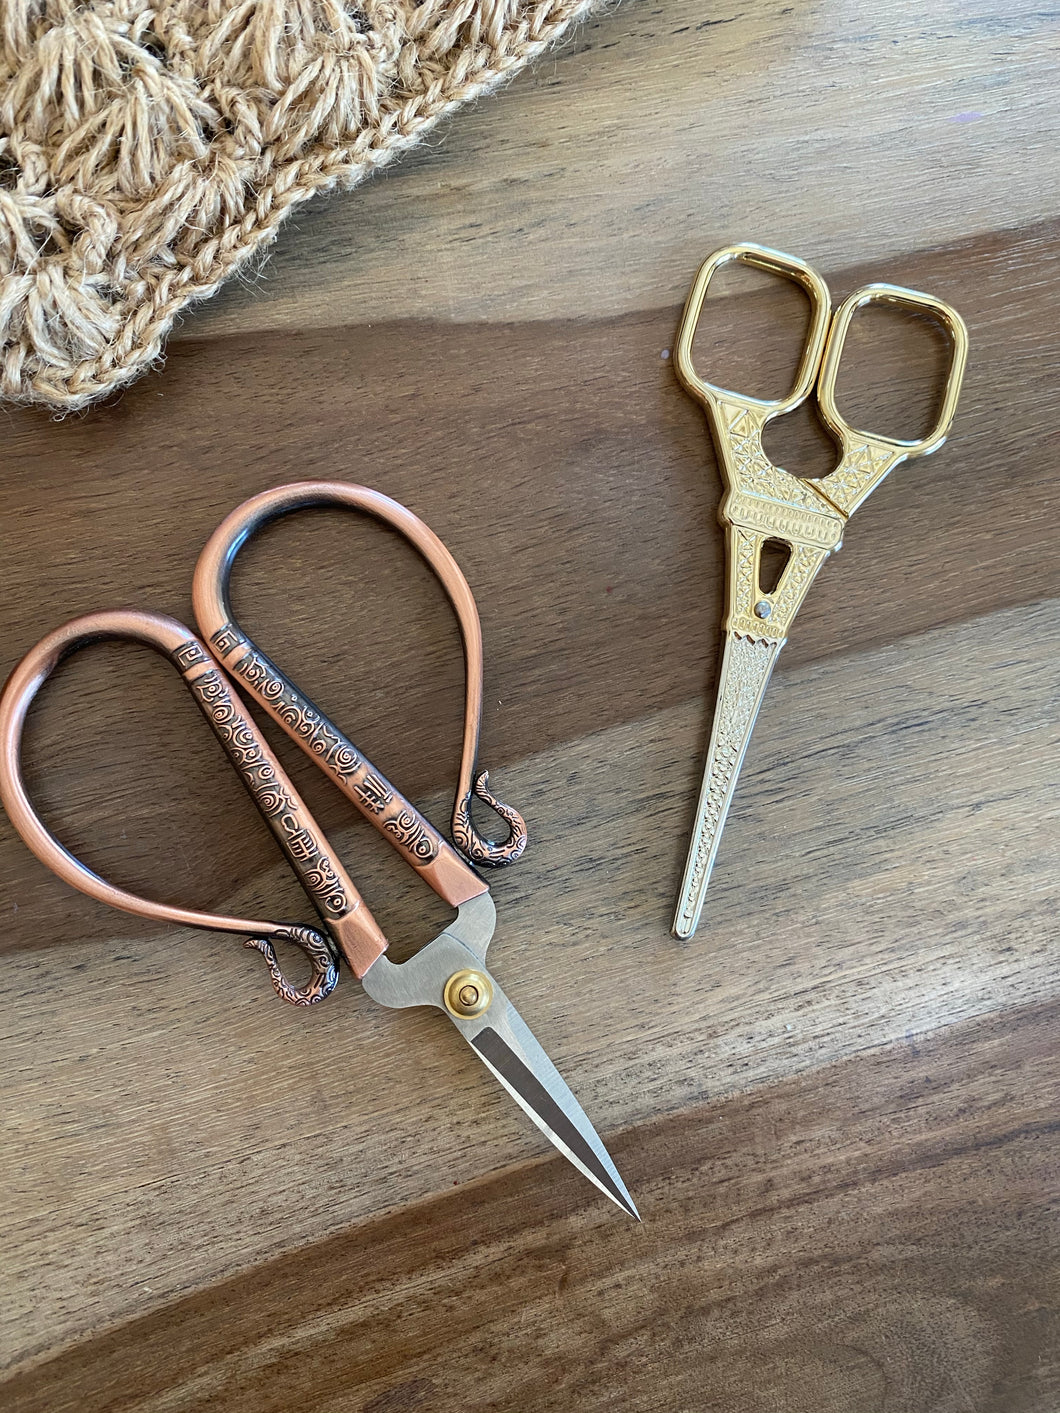 Antique craft Scissors